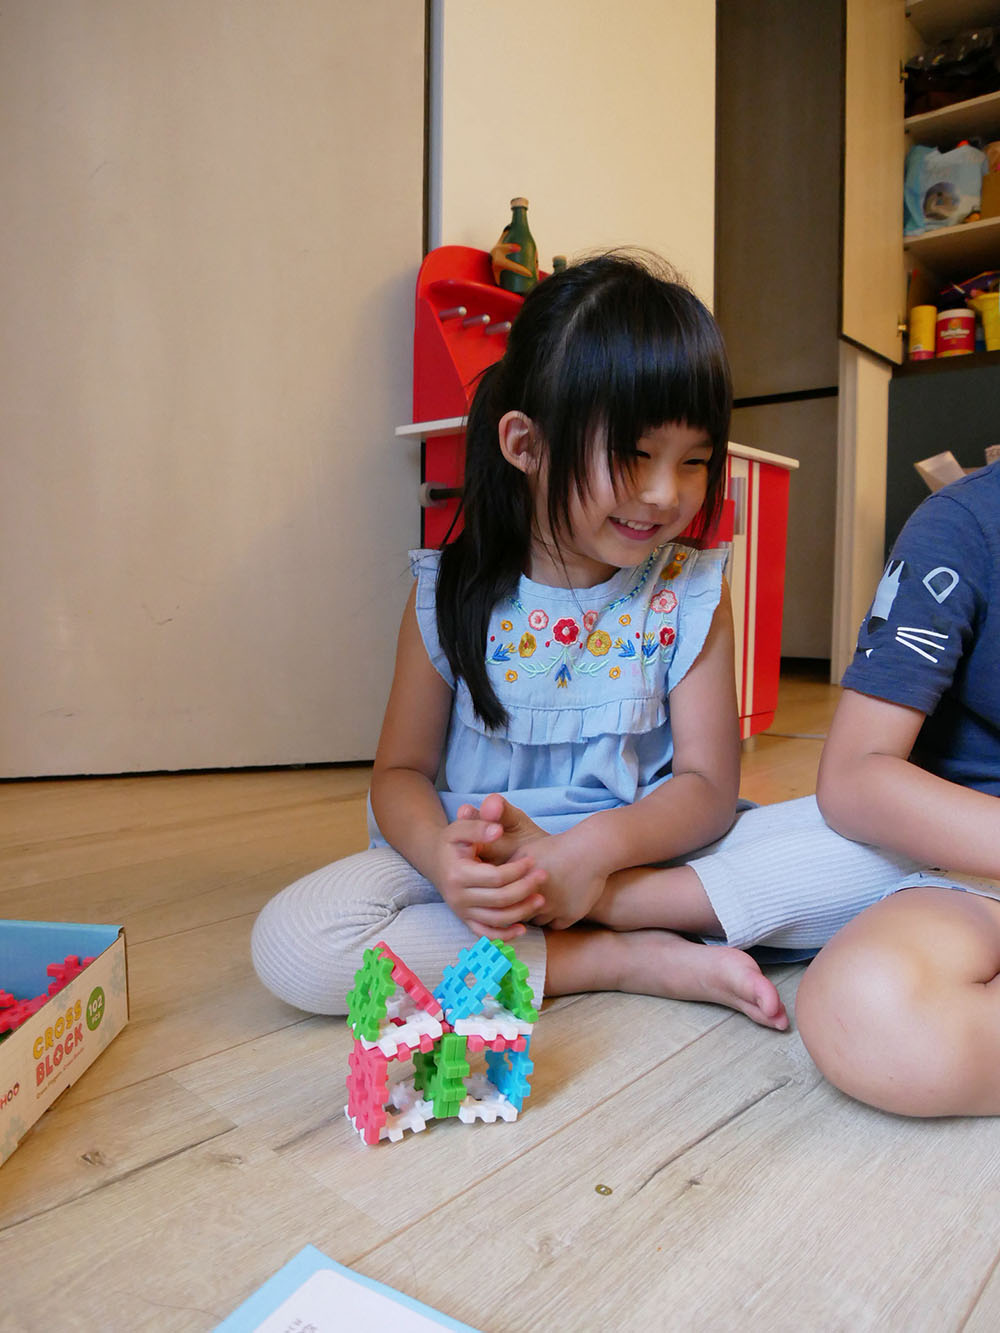 [啾團] 安全又好玩,給小朋友的無限想像及建構能力-WOOHOO FantasBrick大型搖搖軟積木+WOOHOO Block Junior 軟積木+WOOHOO兒童玩具收納櫃+心心積木